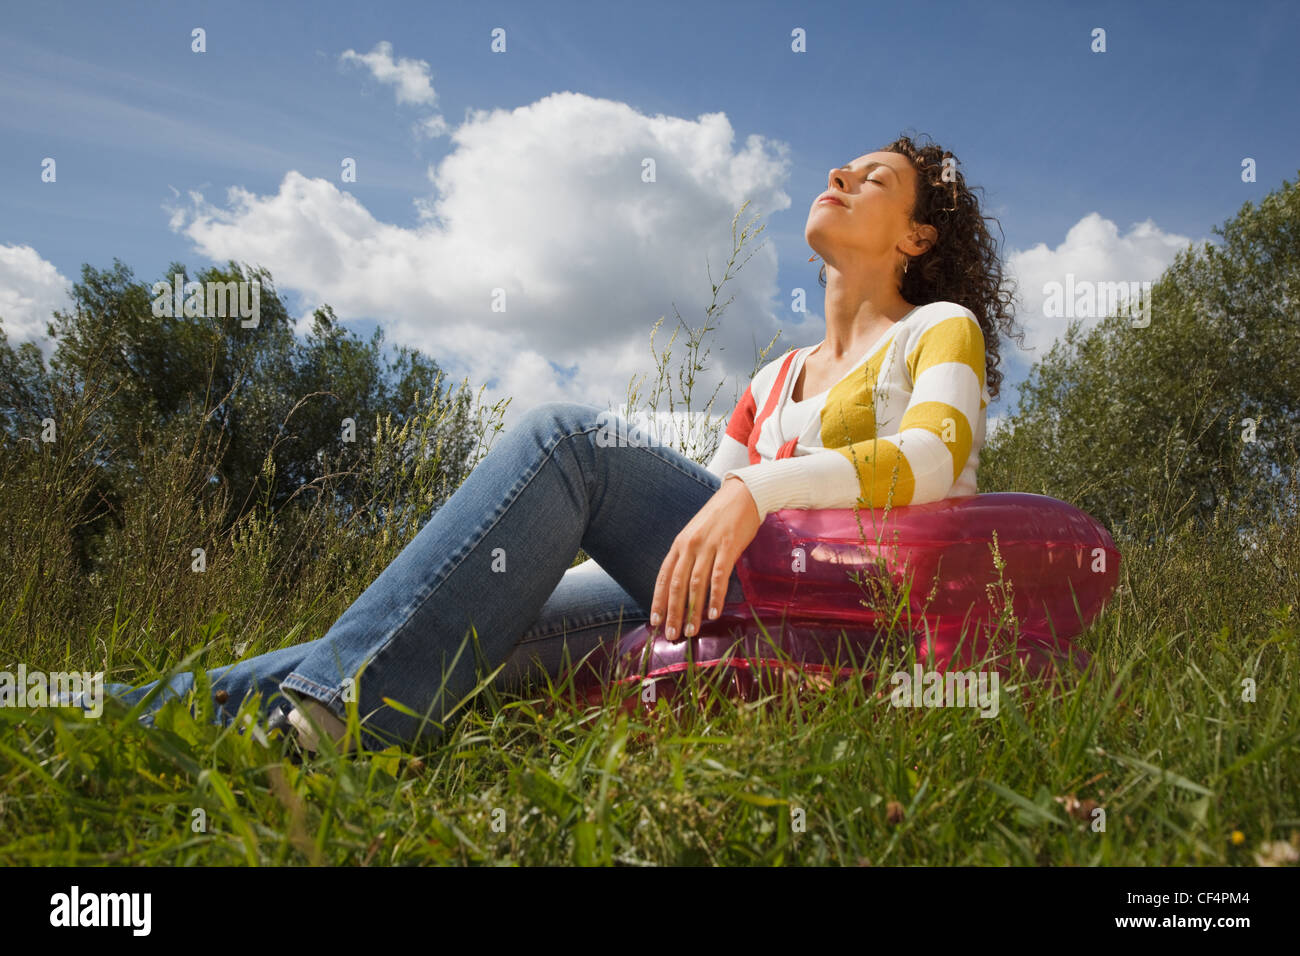 Mujer joven en el día de descanso de verano al aire libre, sentado en un sillón inflable Foto de stock